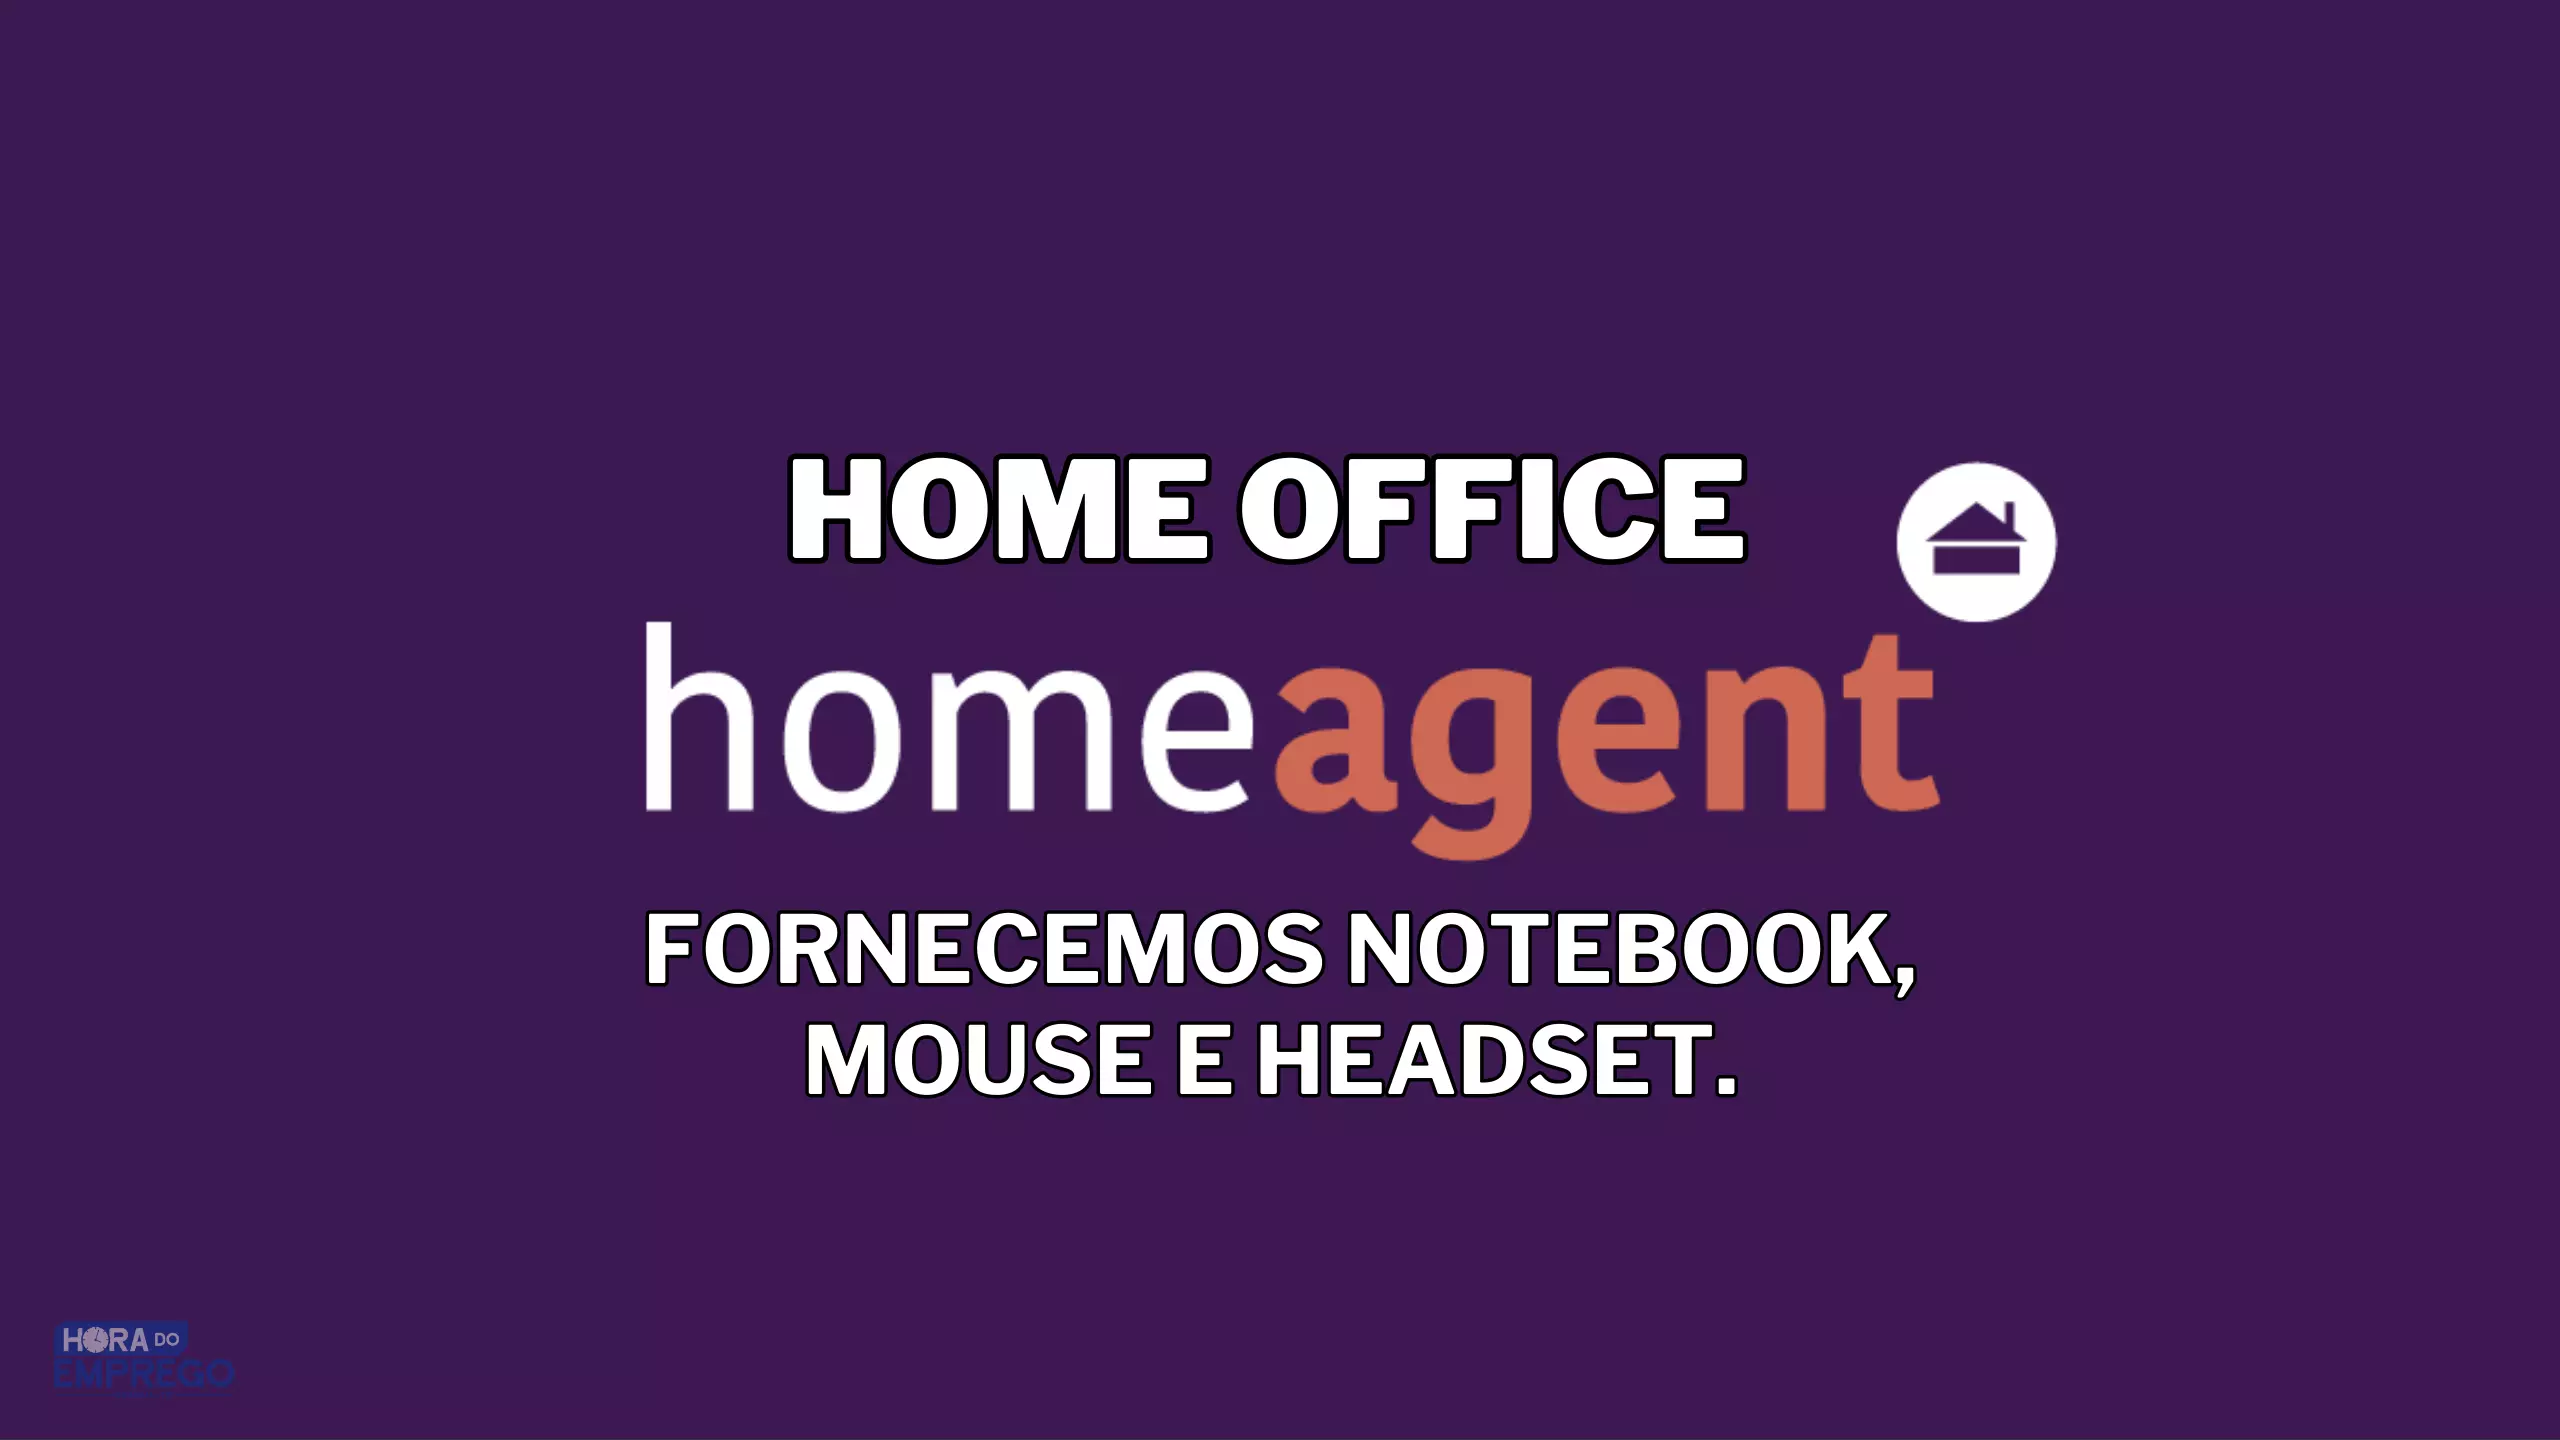 Home Agent oferece notebook, mouse e headset para você TRABALHAR DE CASA EM HOME OFFICE